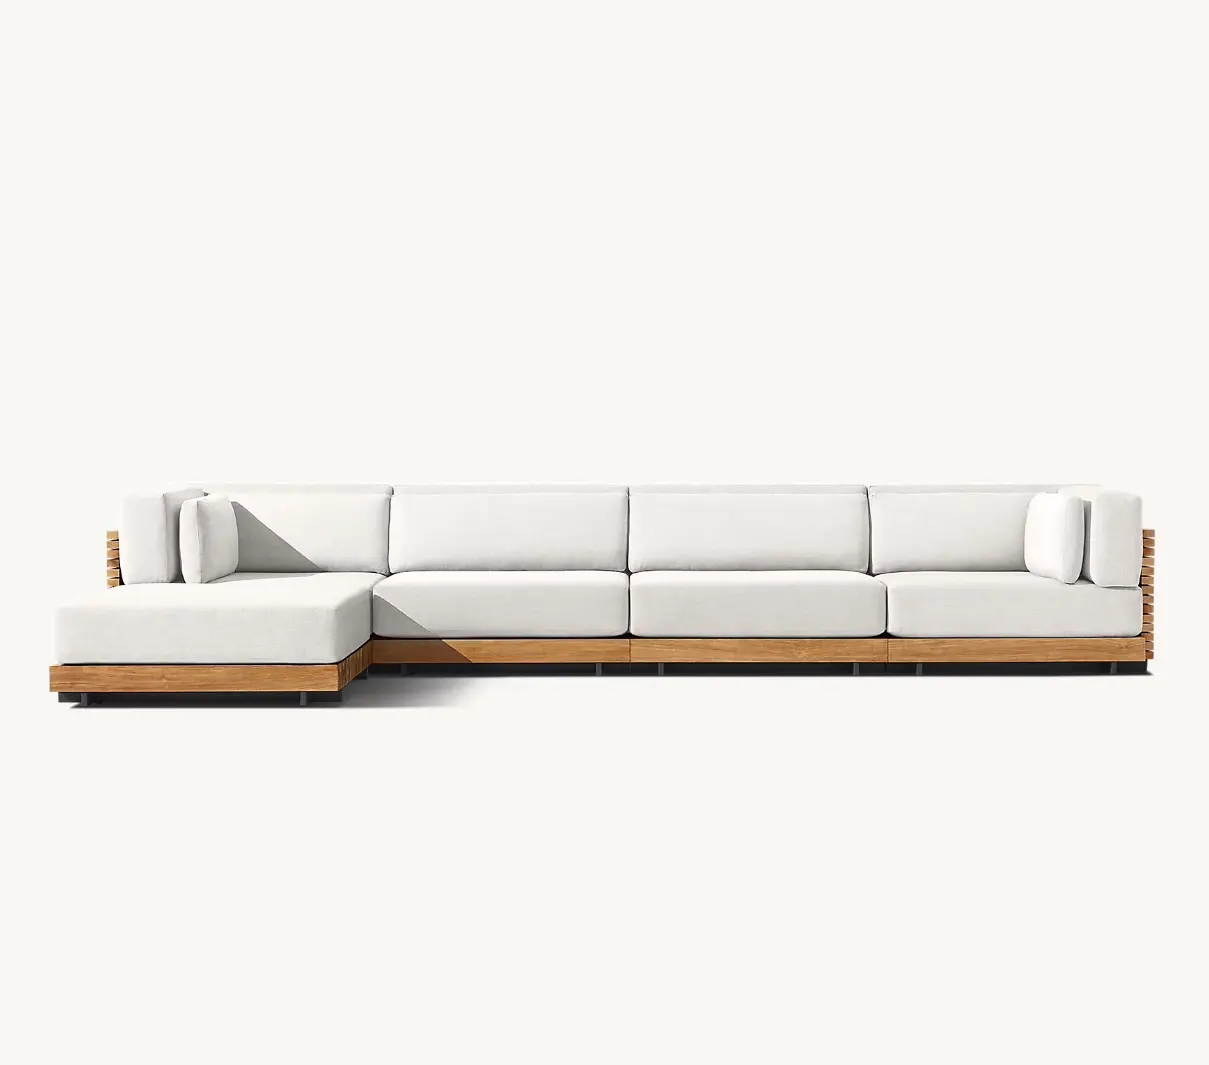 أريكة خارجية من LUXORA للفنادق والمنتجعات أريكة من خشب الساج مقطعية عصرية فاخرة أثاث خارجي أريكة